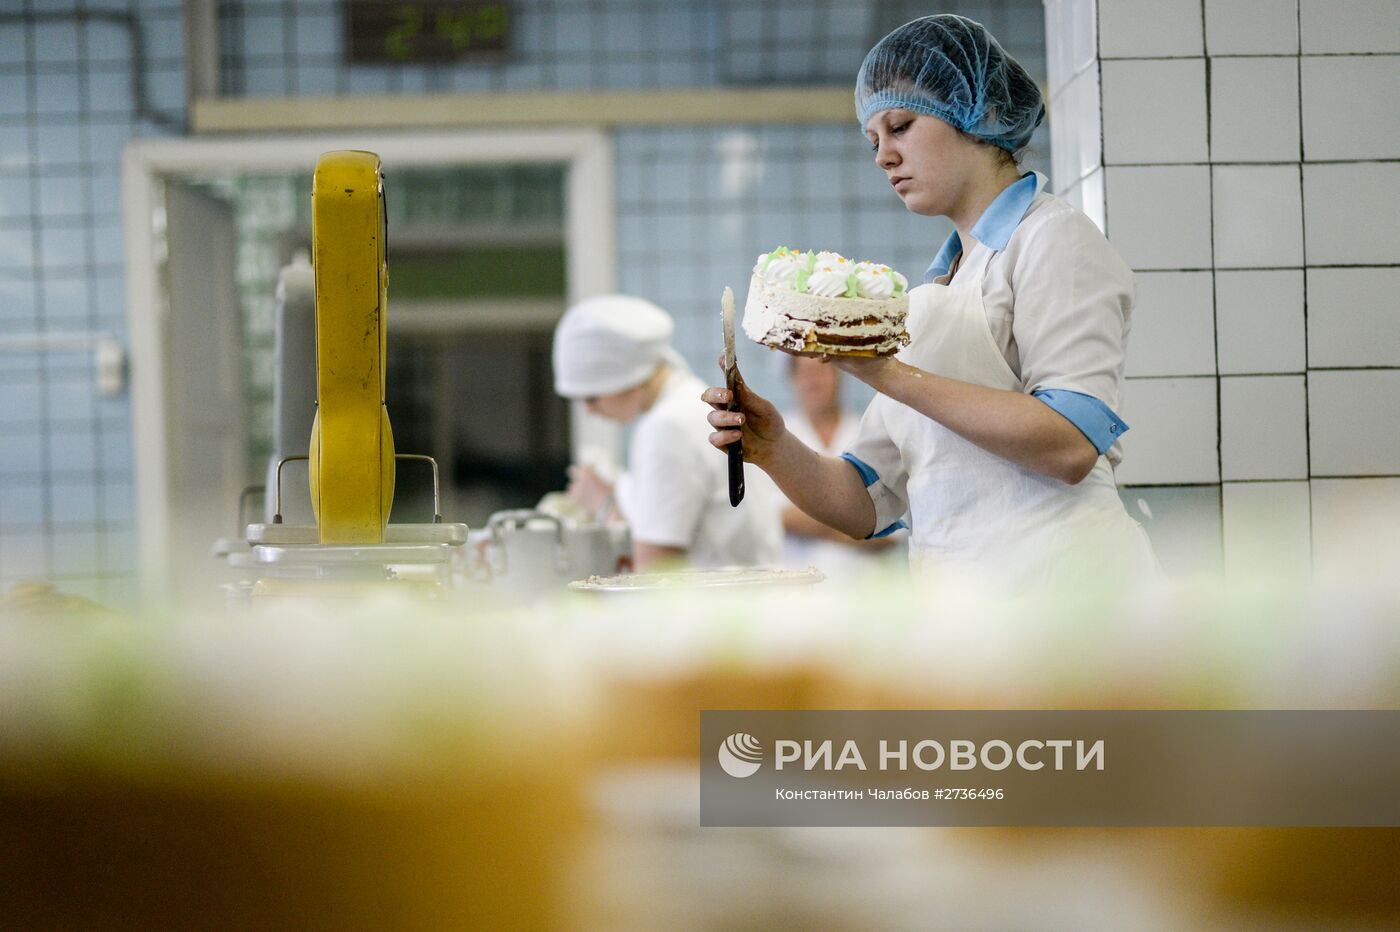 Производство кондитерских изделий в Великом Новгороде